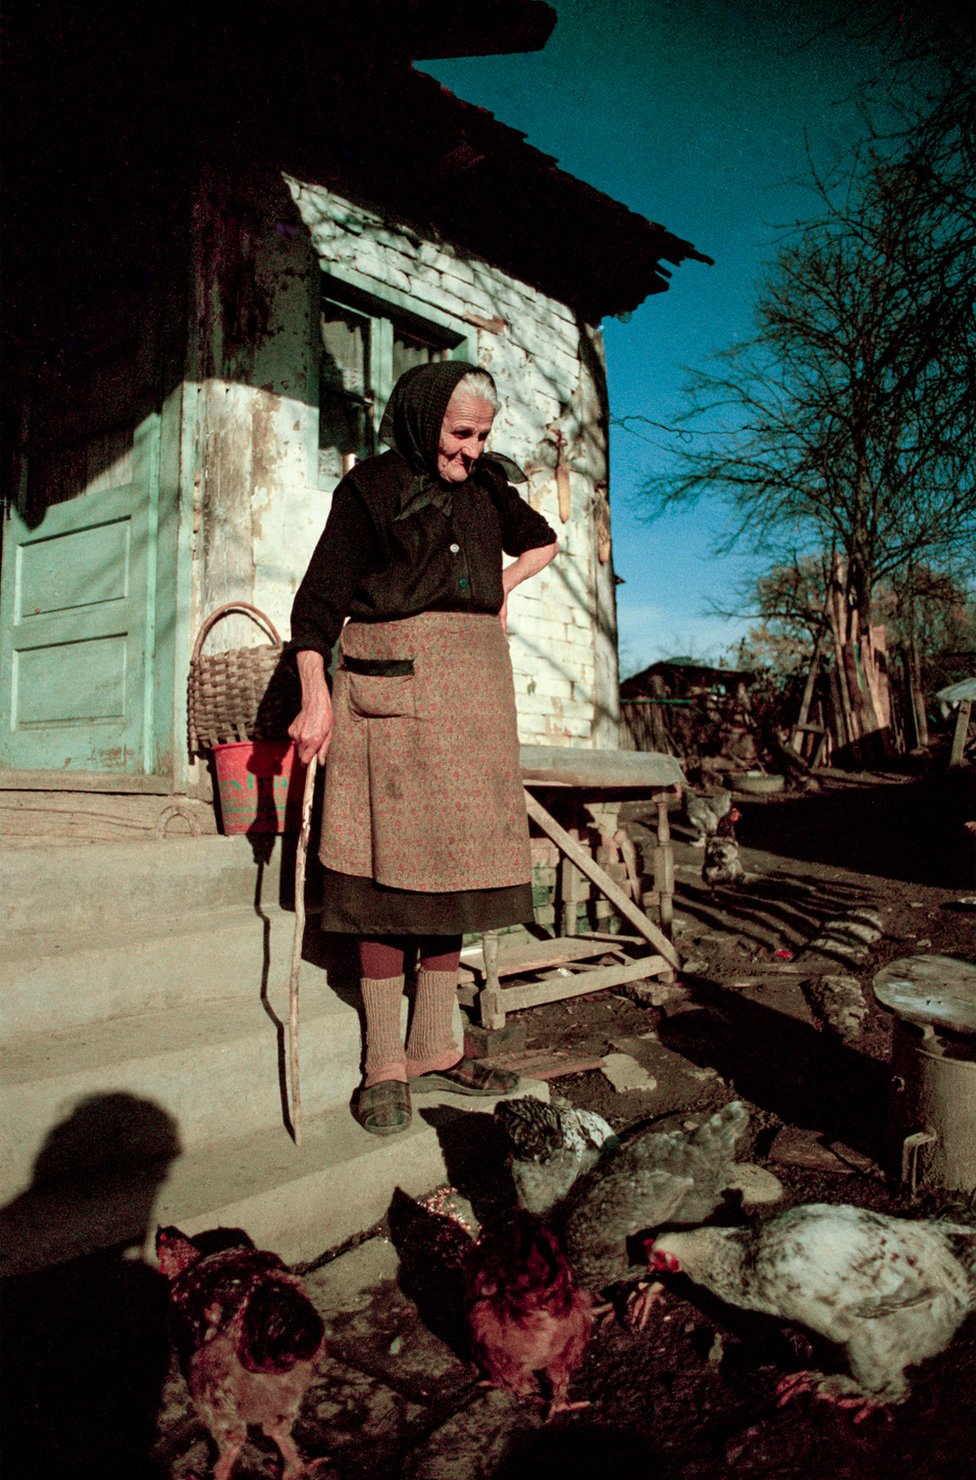 Пожилая женщина смотрит на цыплят за пределами дома